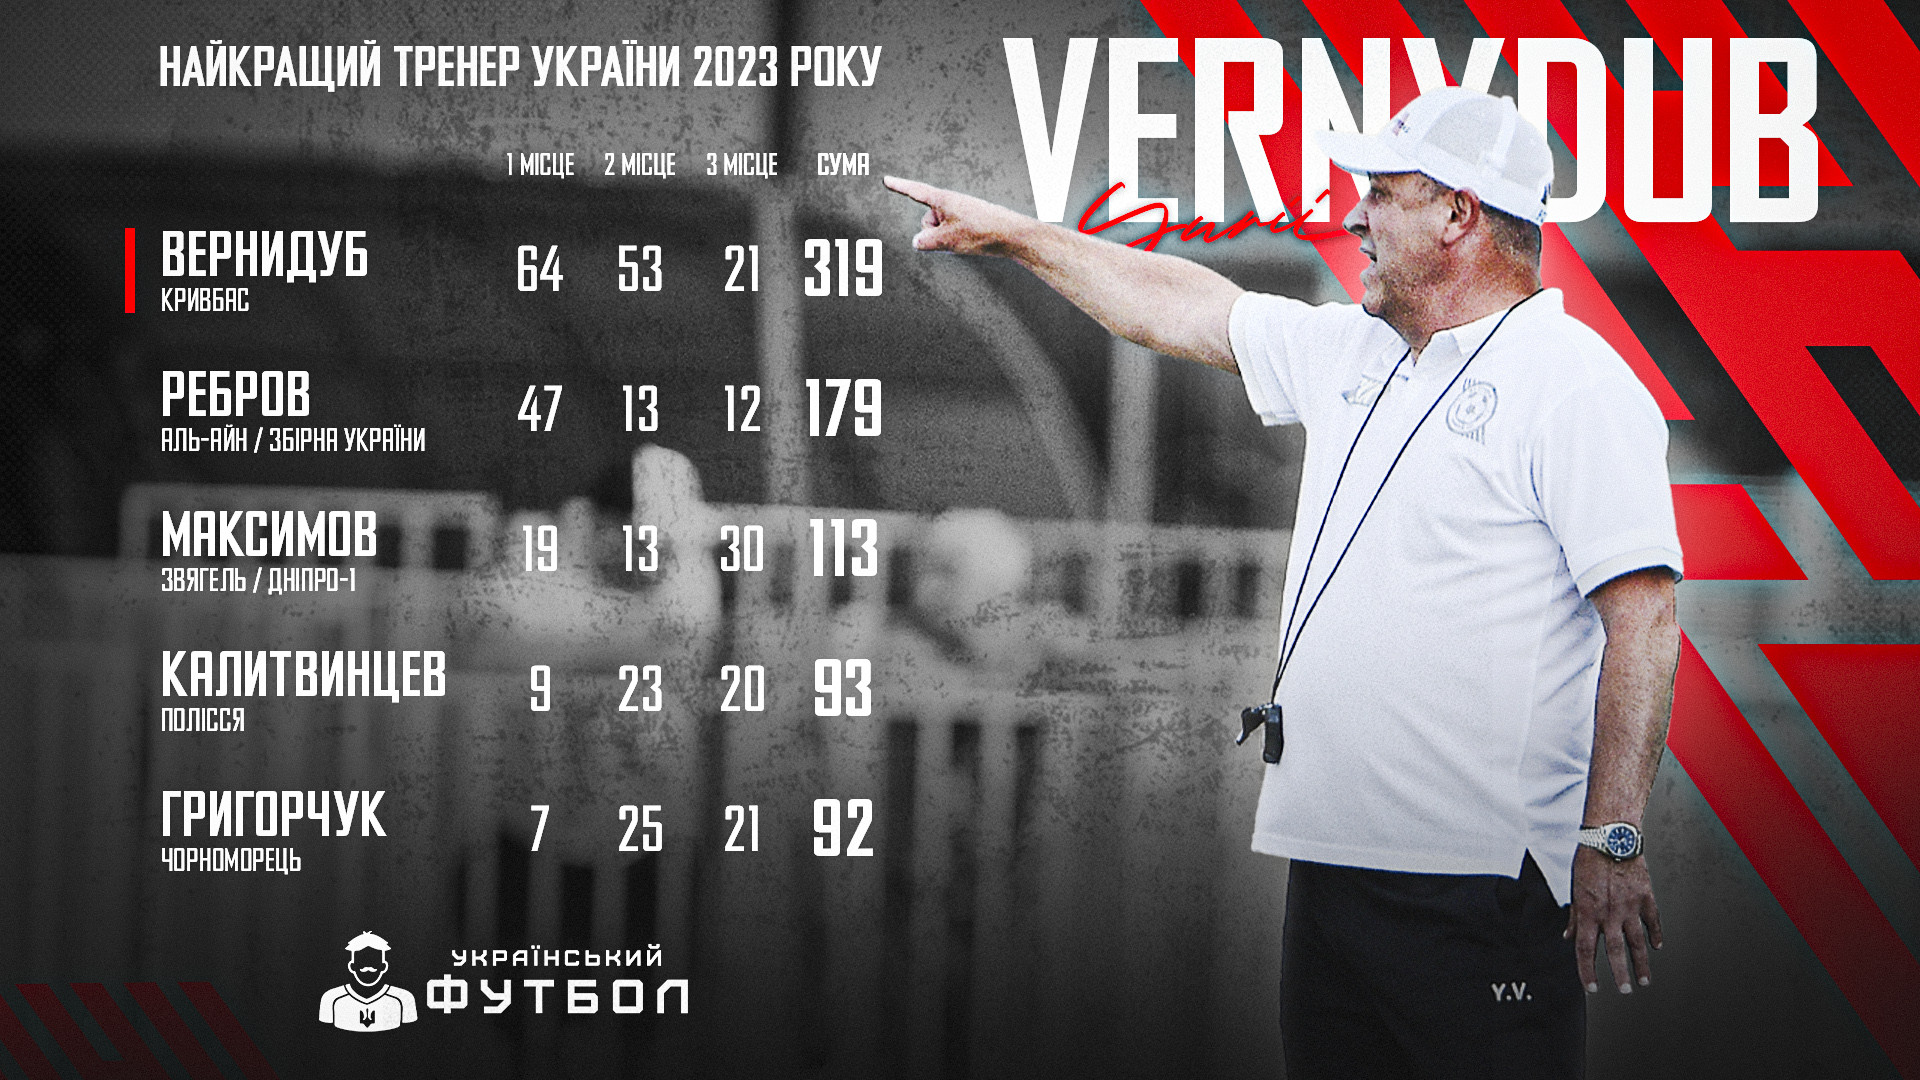 Юрій Вернидуб - найкращий тренер України-2023 за версією Українського футболу!}